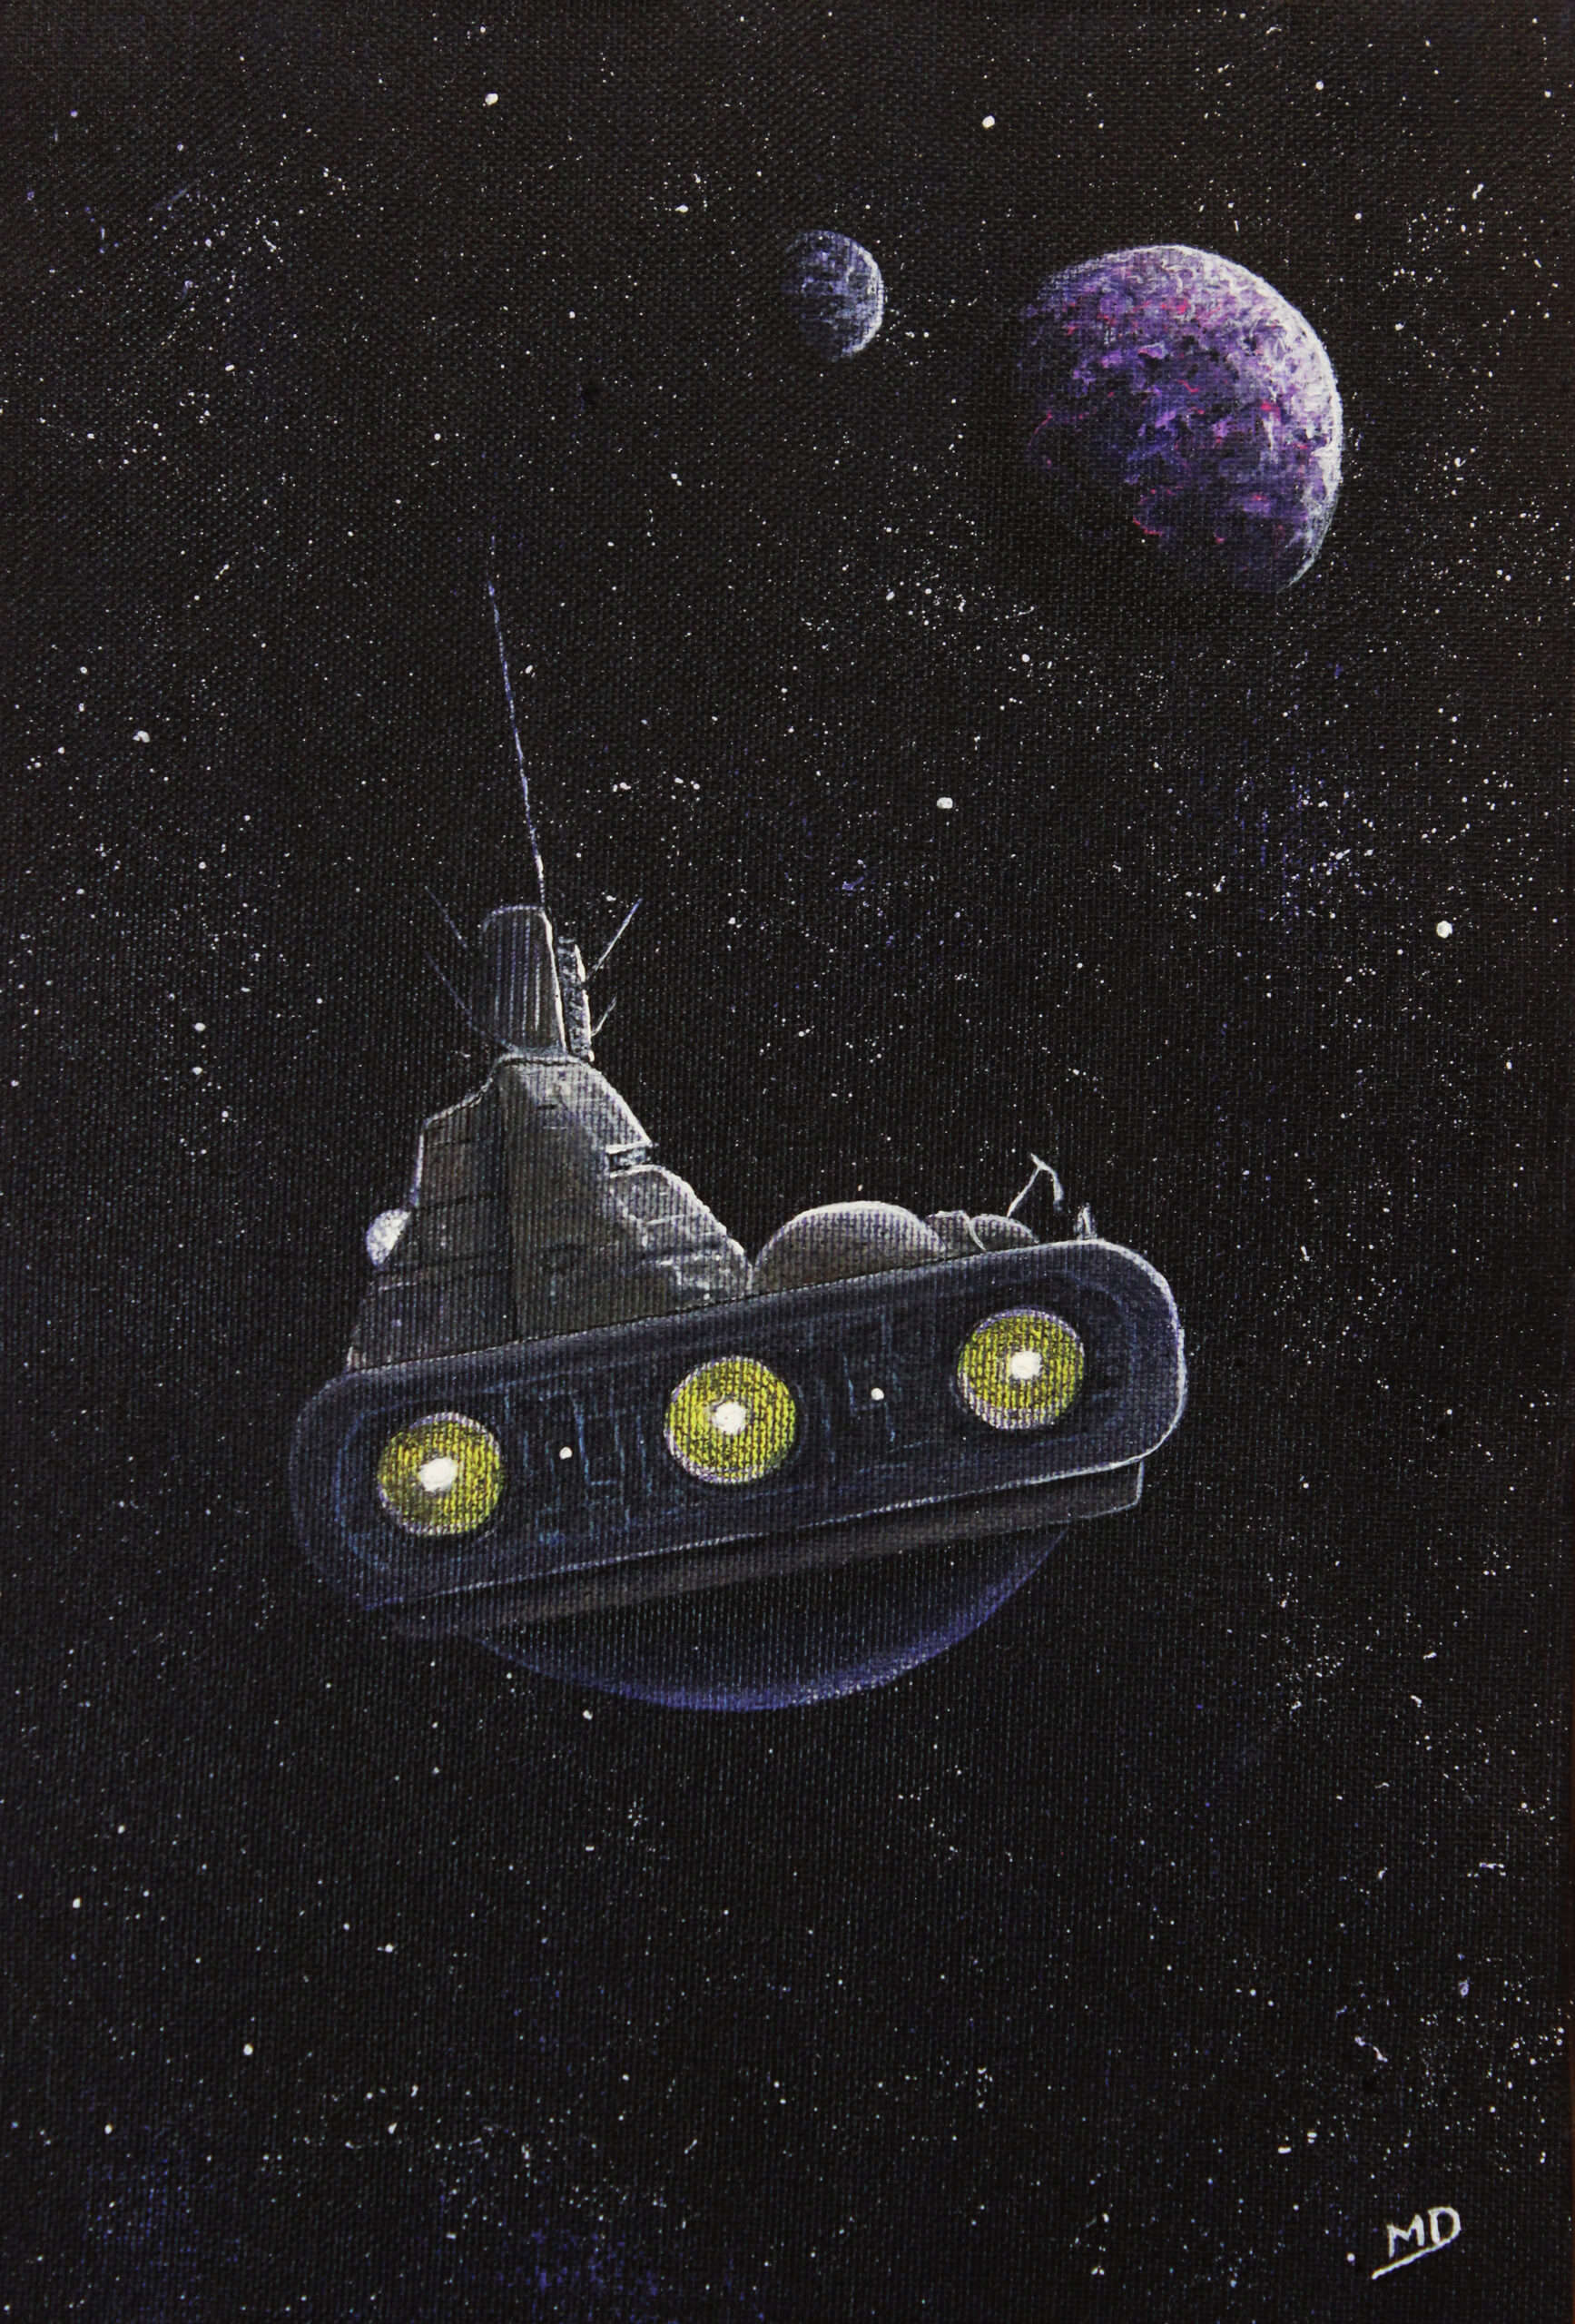 œuvre d'art, science fiction, acrylique sur toile 24/35cm,david morel artiste, un vaisseau en approche d'une planète vue de derrière